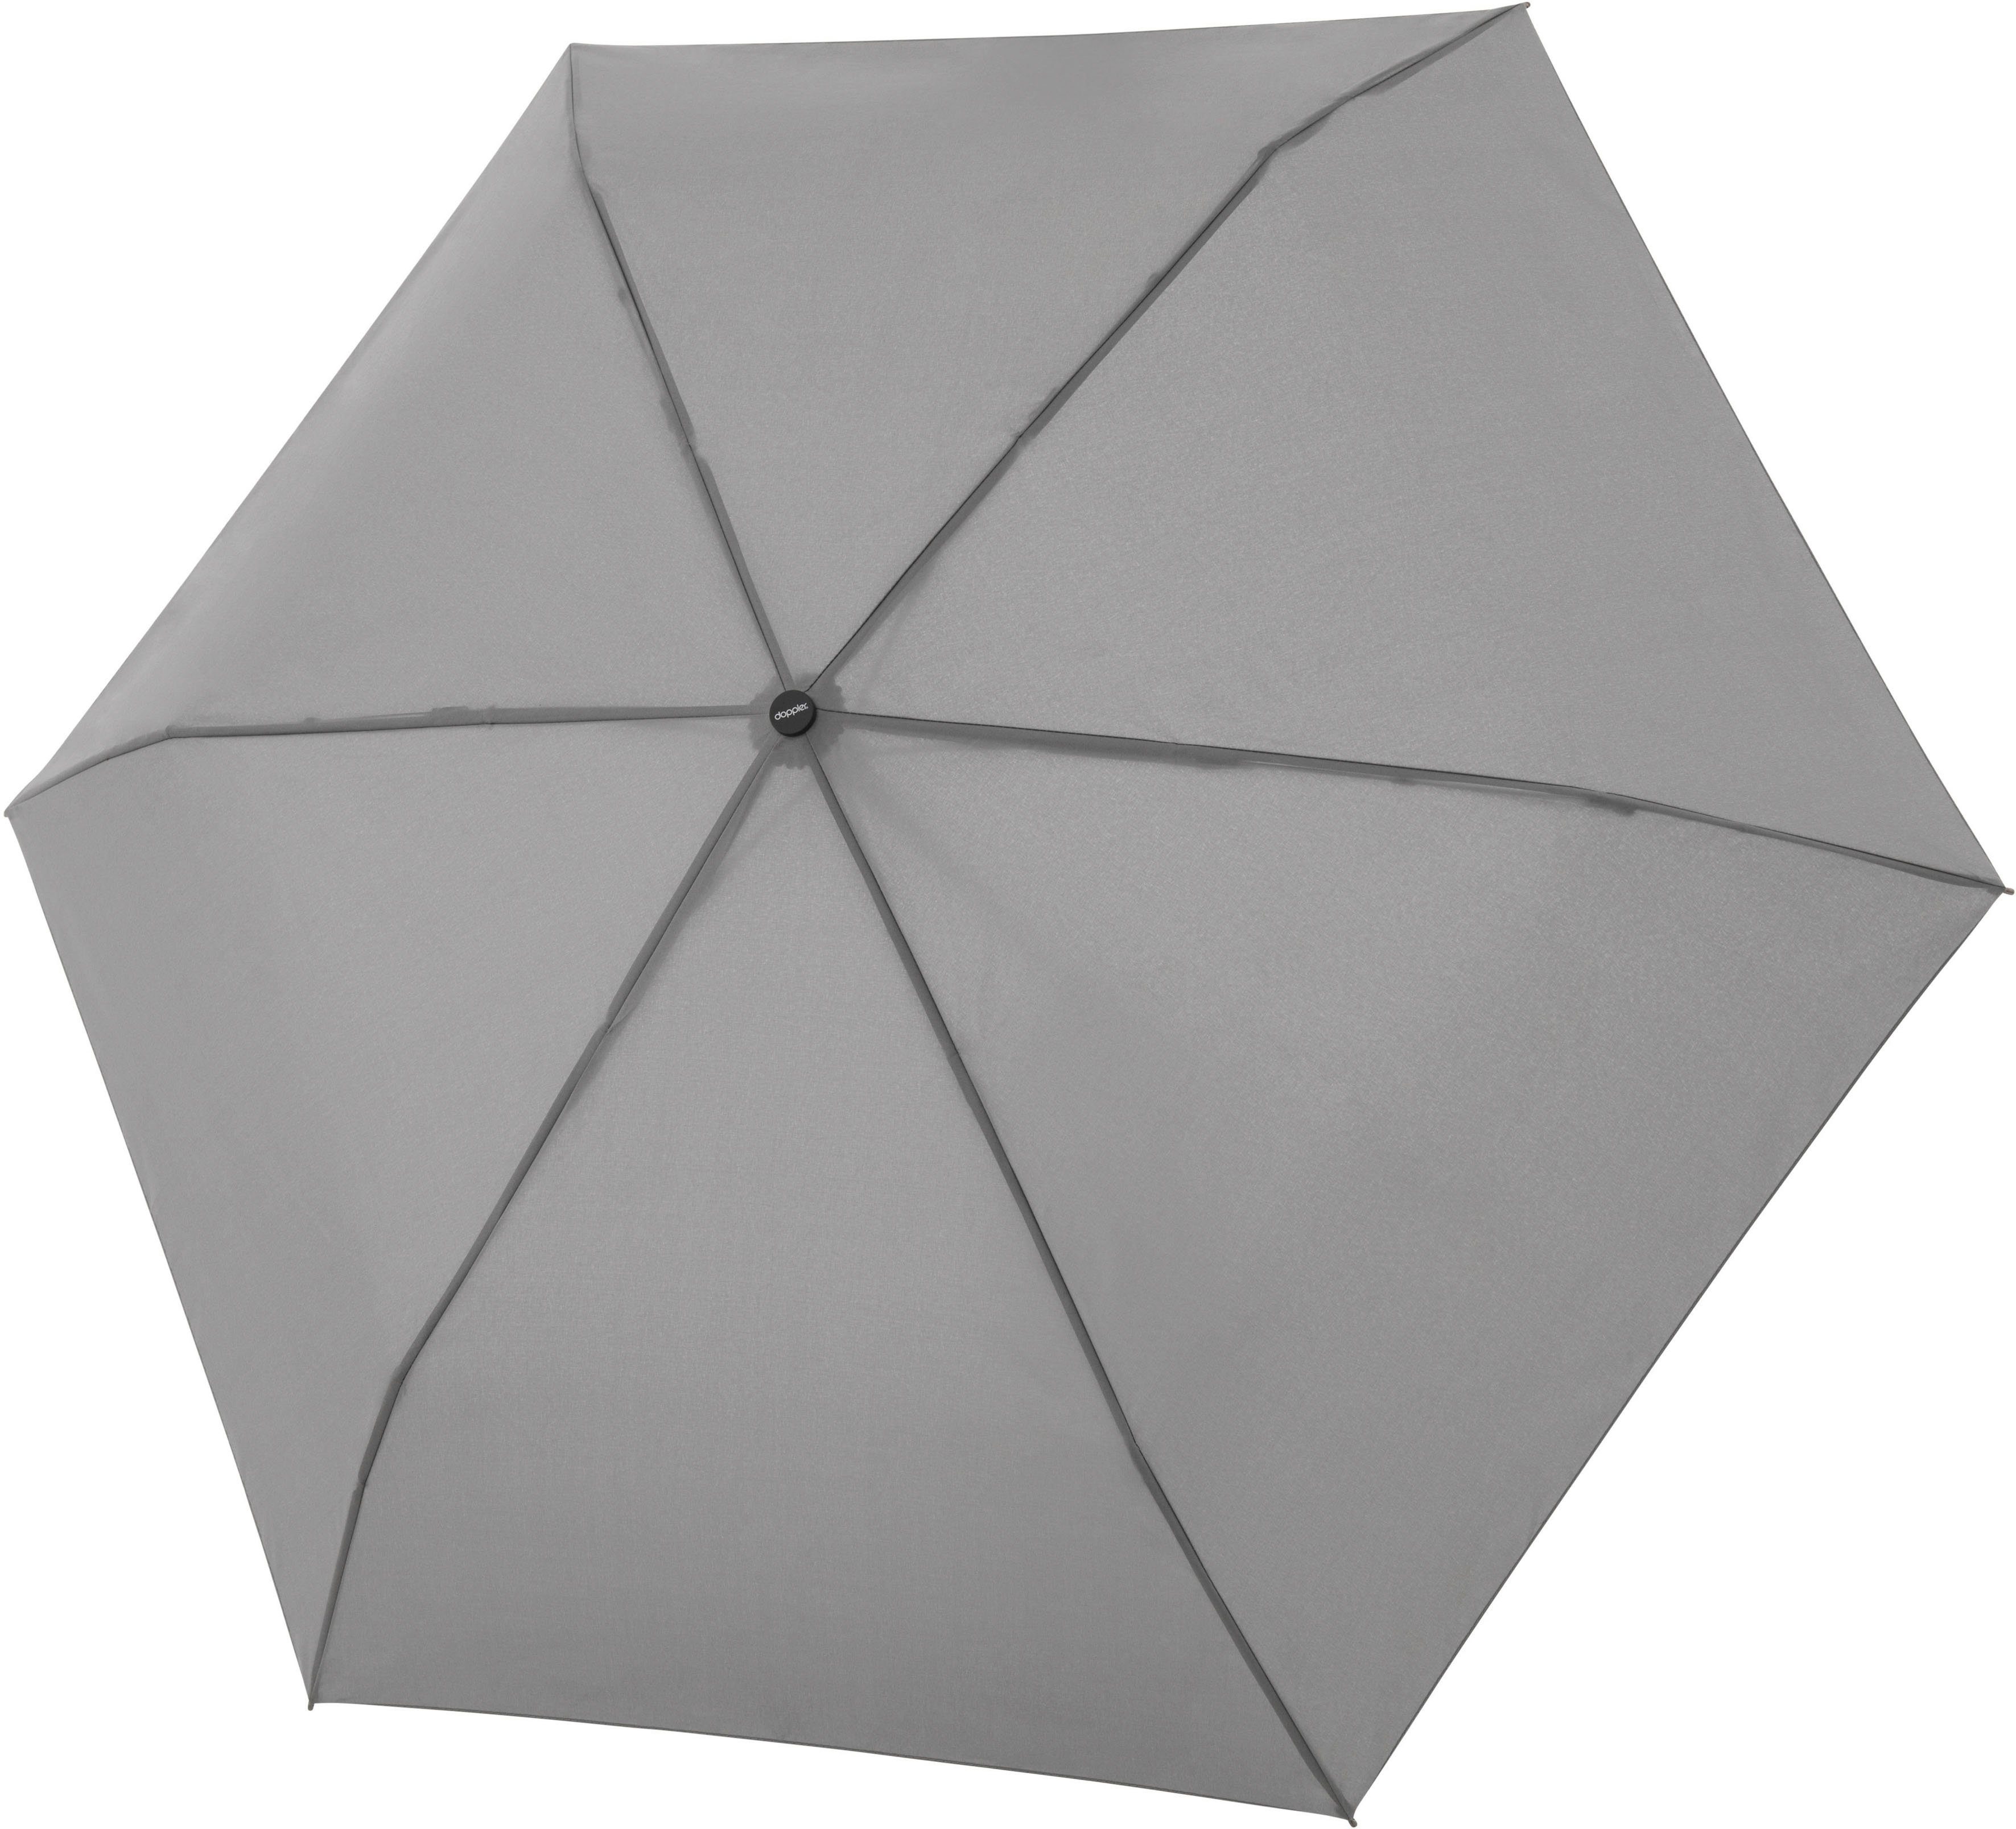 Knopfdruck schließt Taschenregenschirm Smart nur Schirmdach das doppler® Mit sich einem grey, close uni,